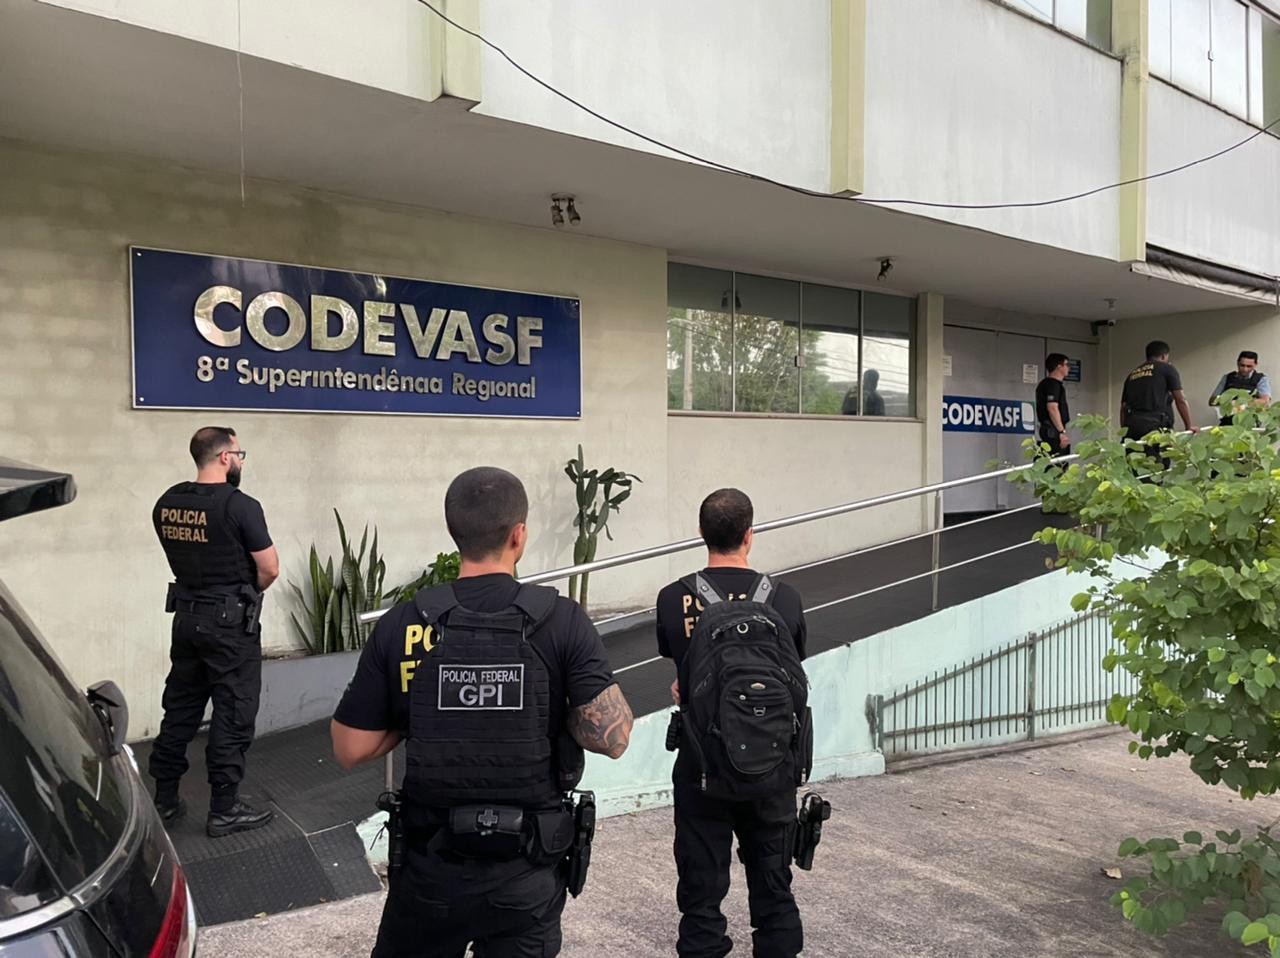 Gerente da Codevasf é afastado por suspeita de corrupção após receber R$ 250 mil de empresas, diz PF